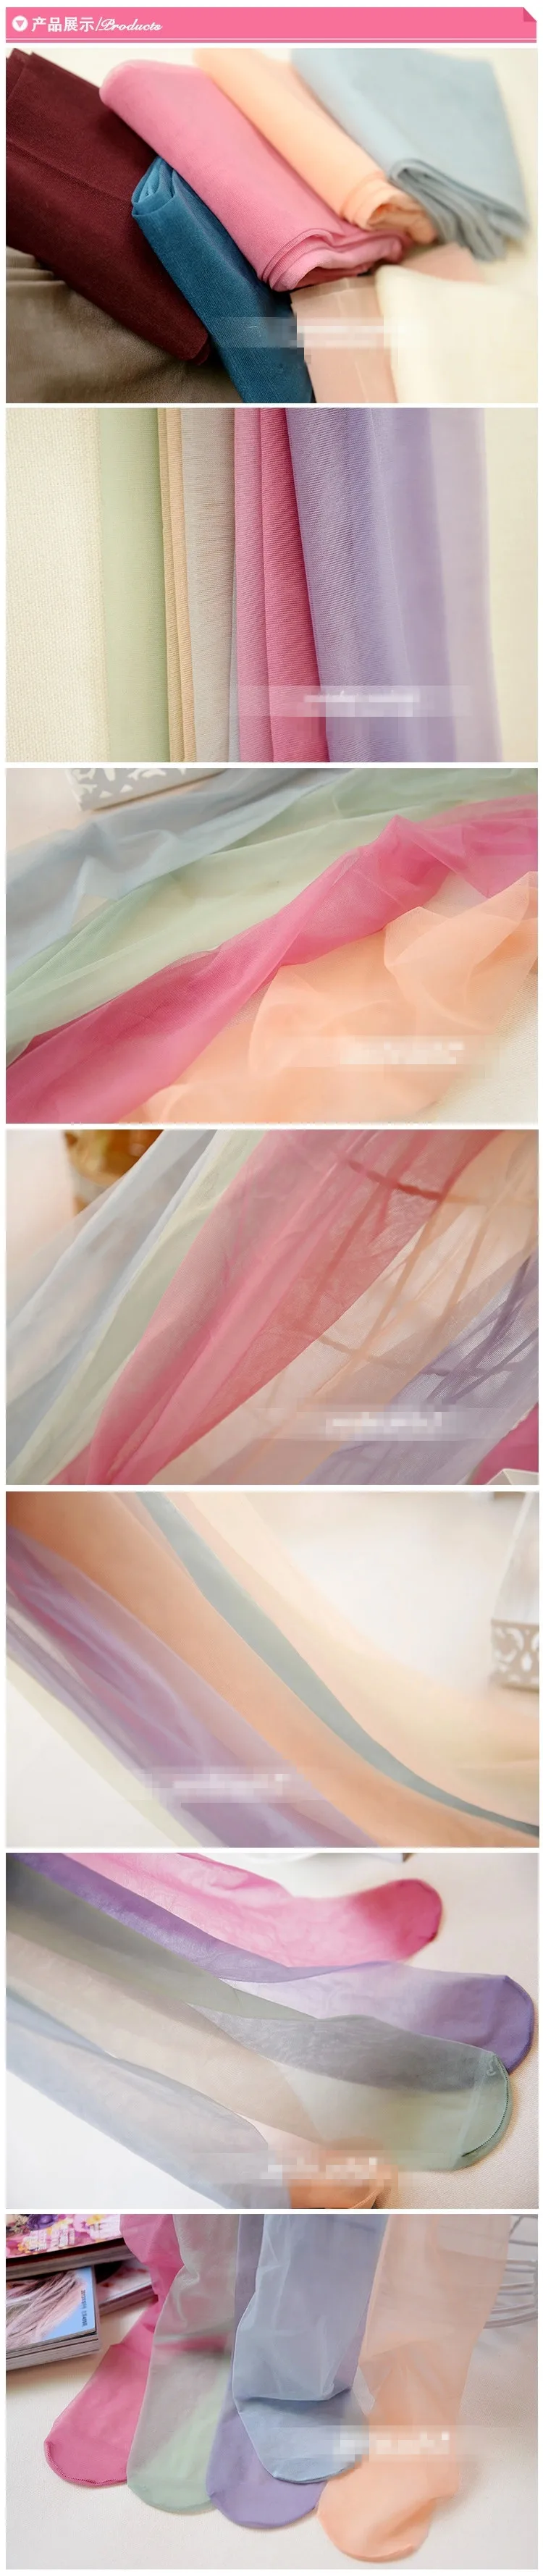 Летний стиль 10D ультратонкие Ice шелковые чулки Res для женщин нейлон колготки для новорождённых пикантные женские чулки конфетного цвета